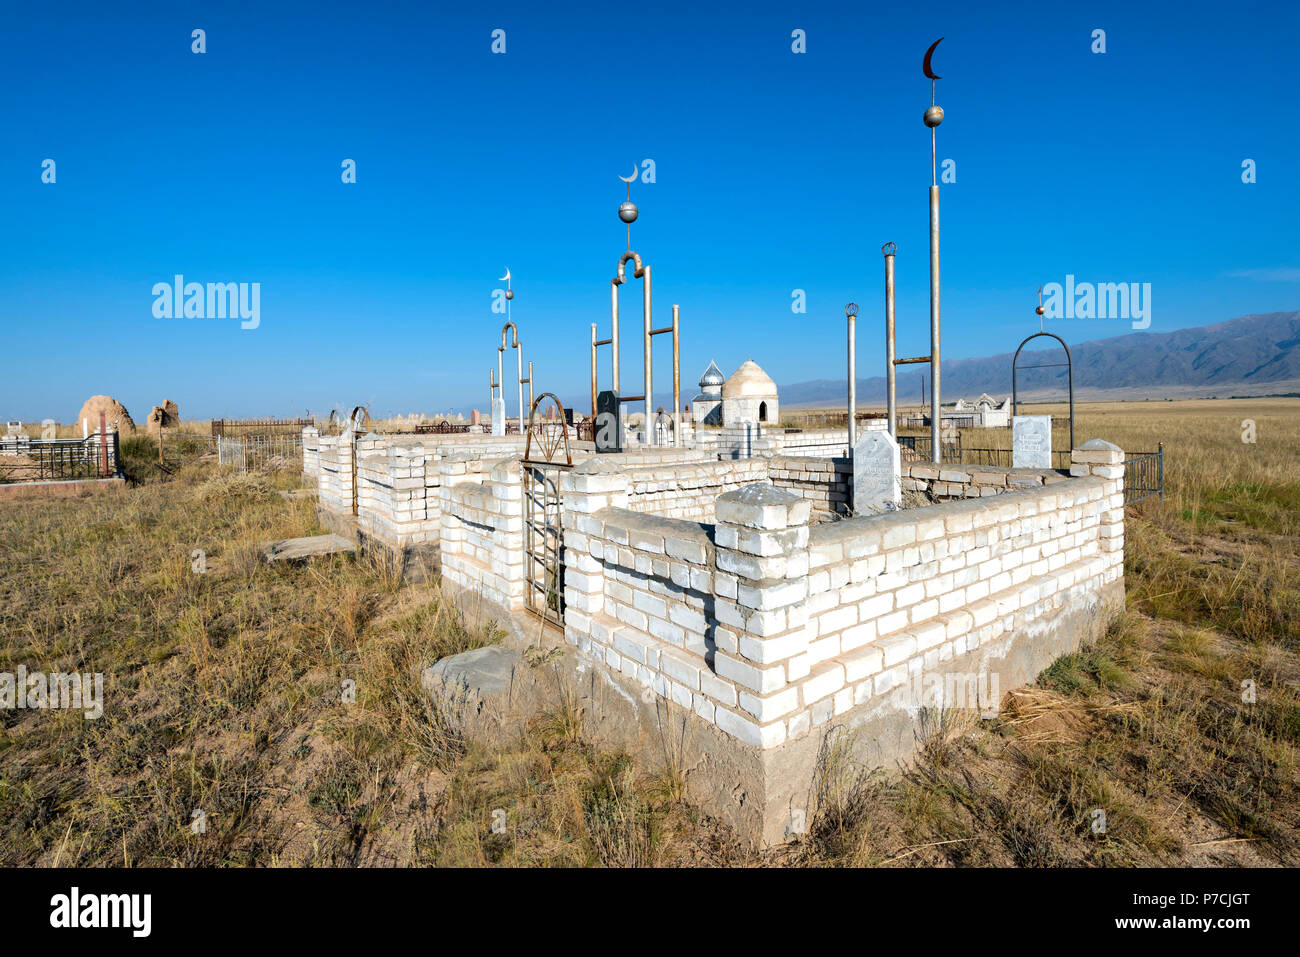 Cimetière Musulman, Sati village, Tian Shan, Kazakhstan Banque D'Images